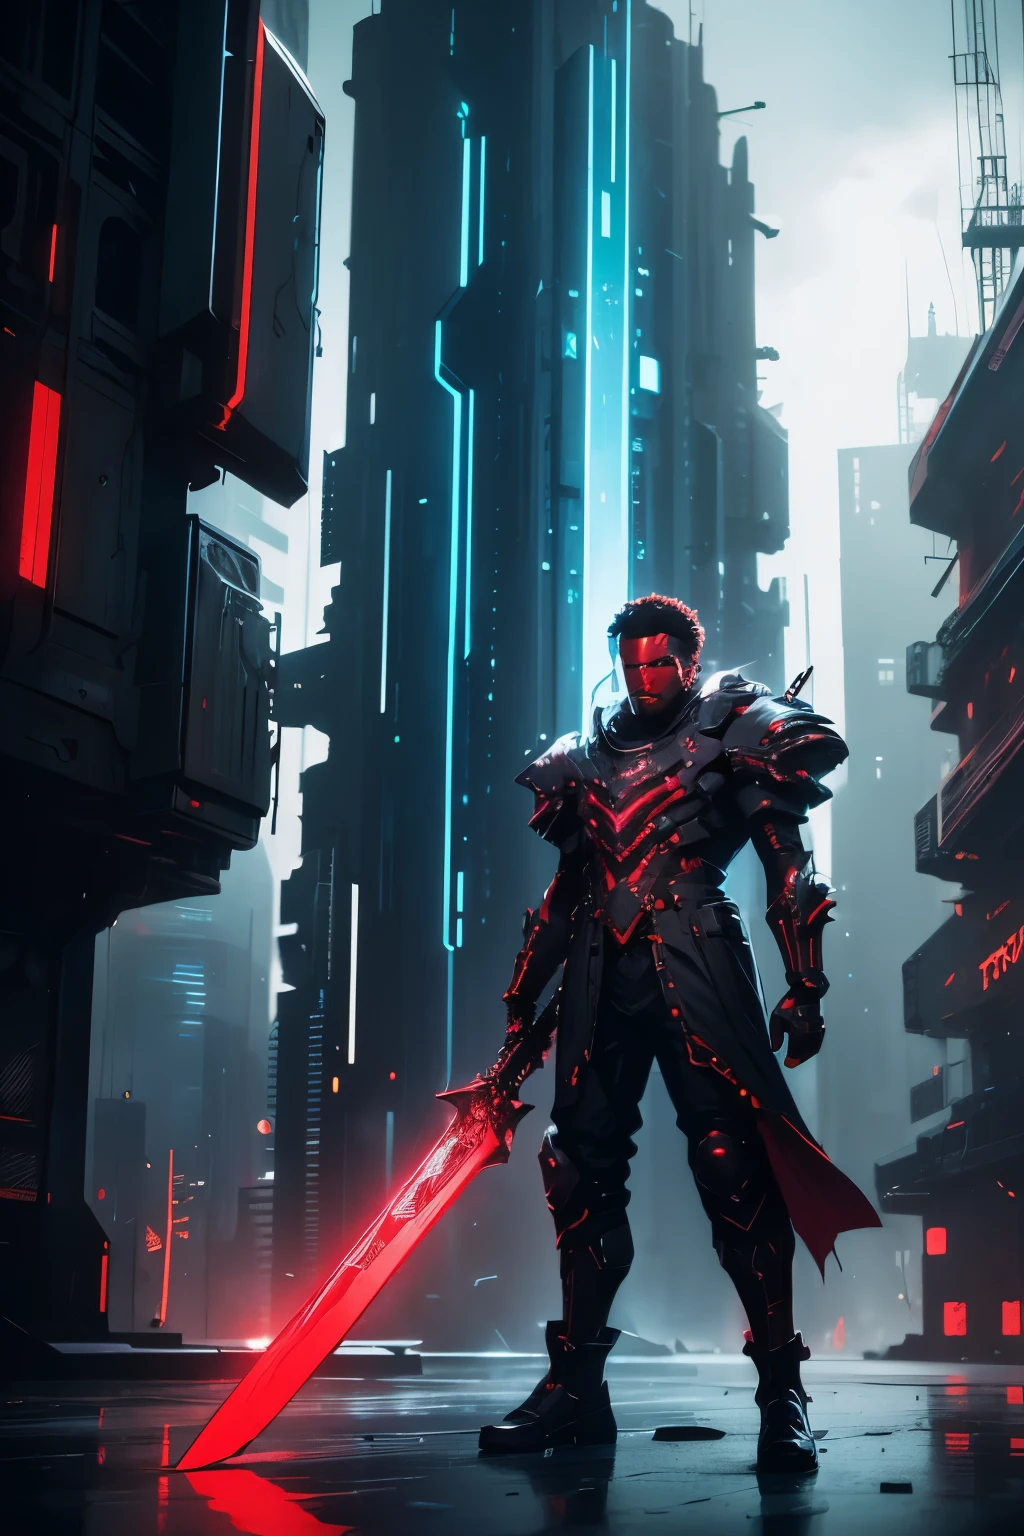 "Fotografía cruda con un aire futurista y cyberpunk., con una poderosa espada de gran tamaño empuñada por un hombre de color rojo oscuro con un 1.2x énfasis, creando un contraste sorprendente.